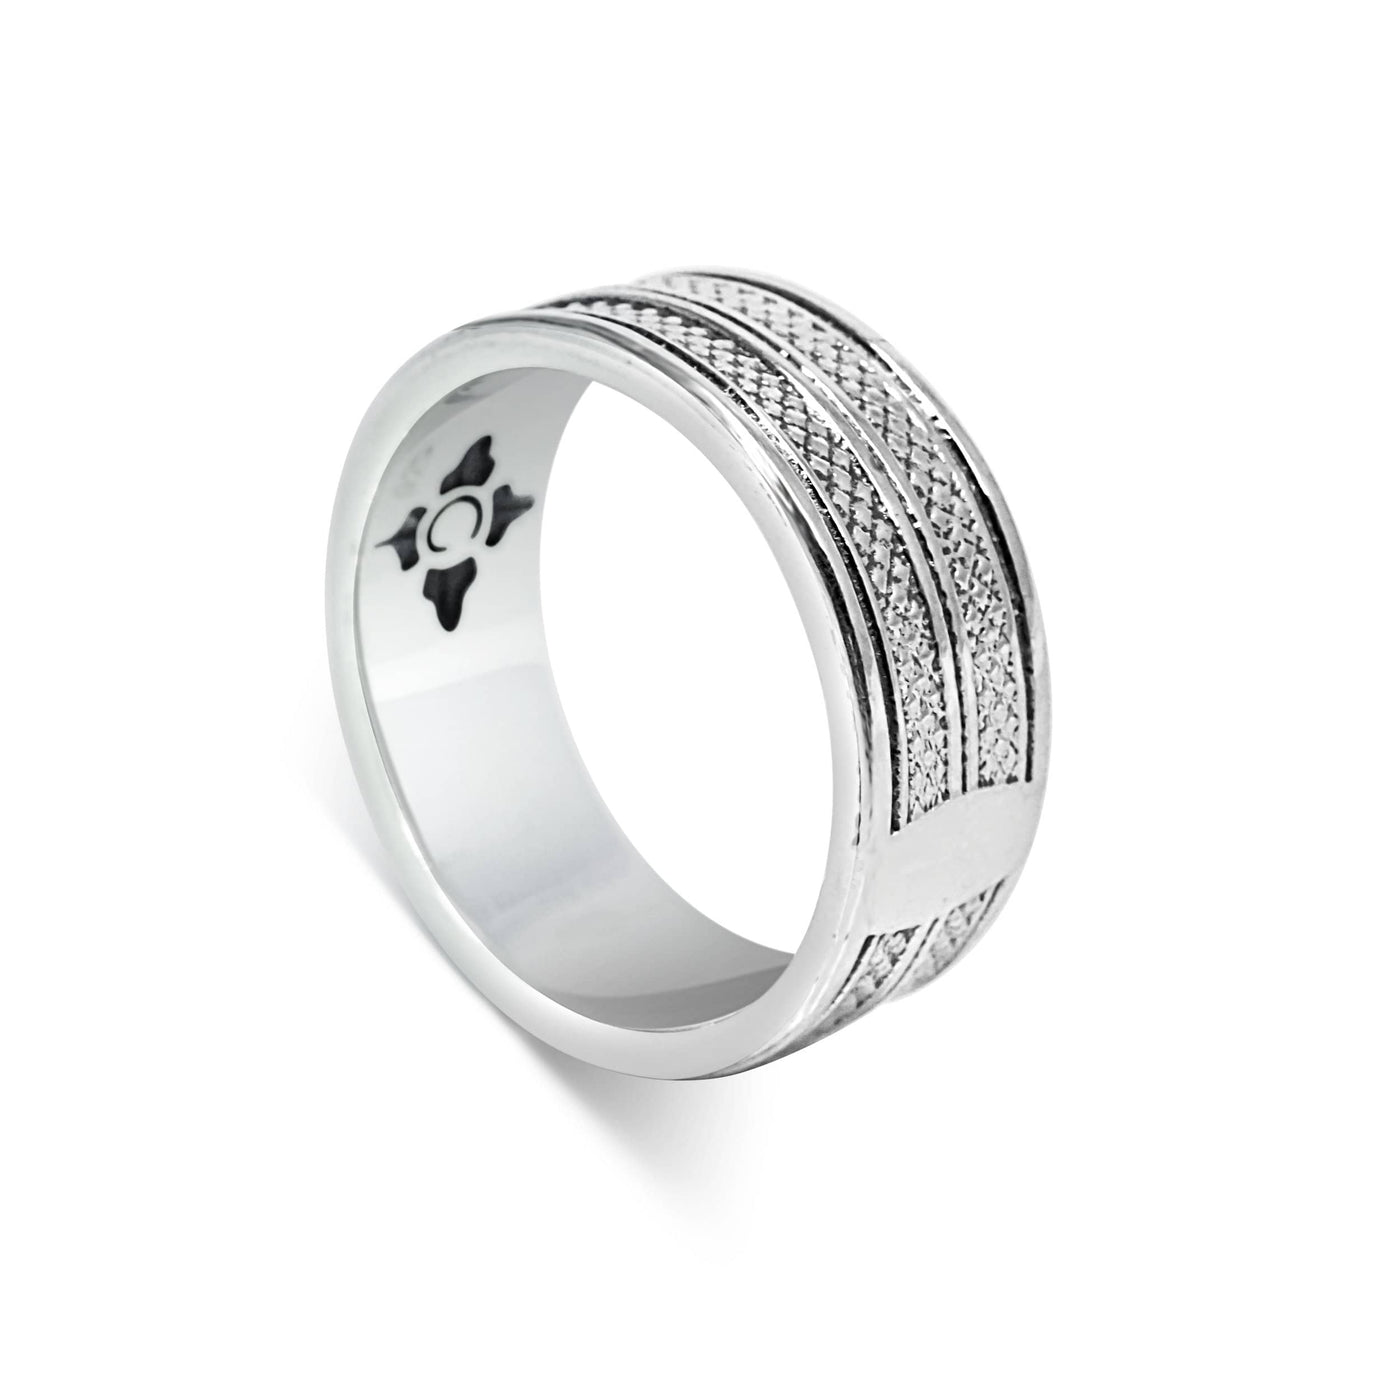 Corda - Girati Silver Rings for Men